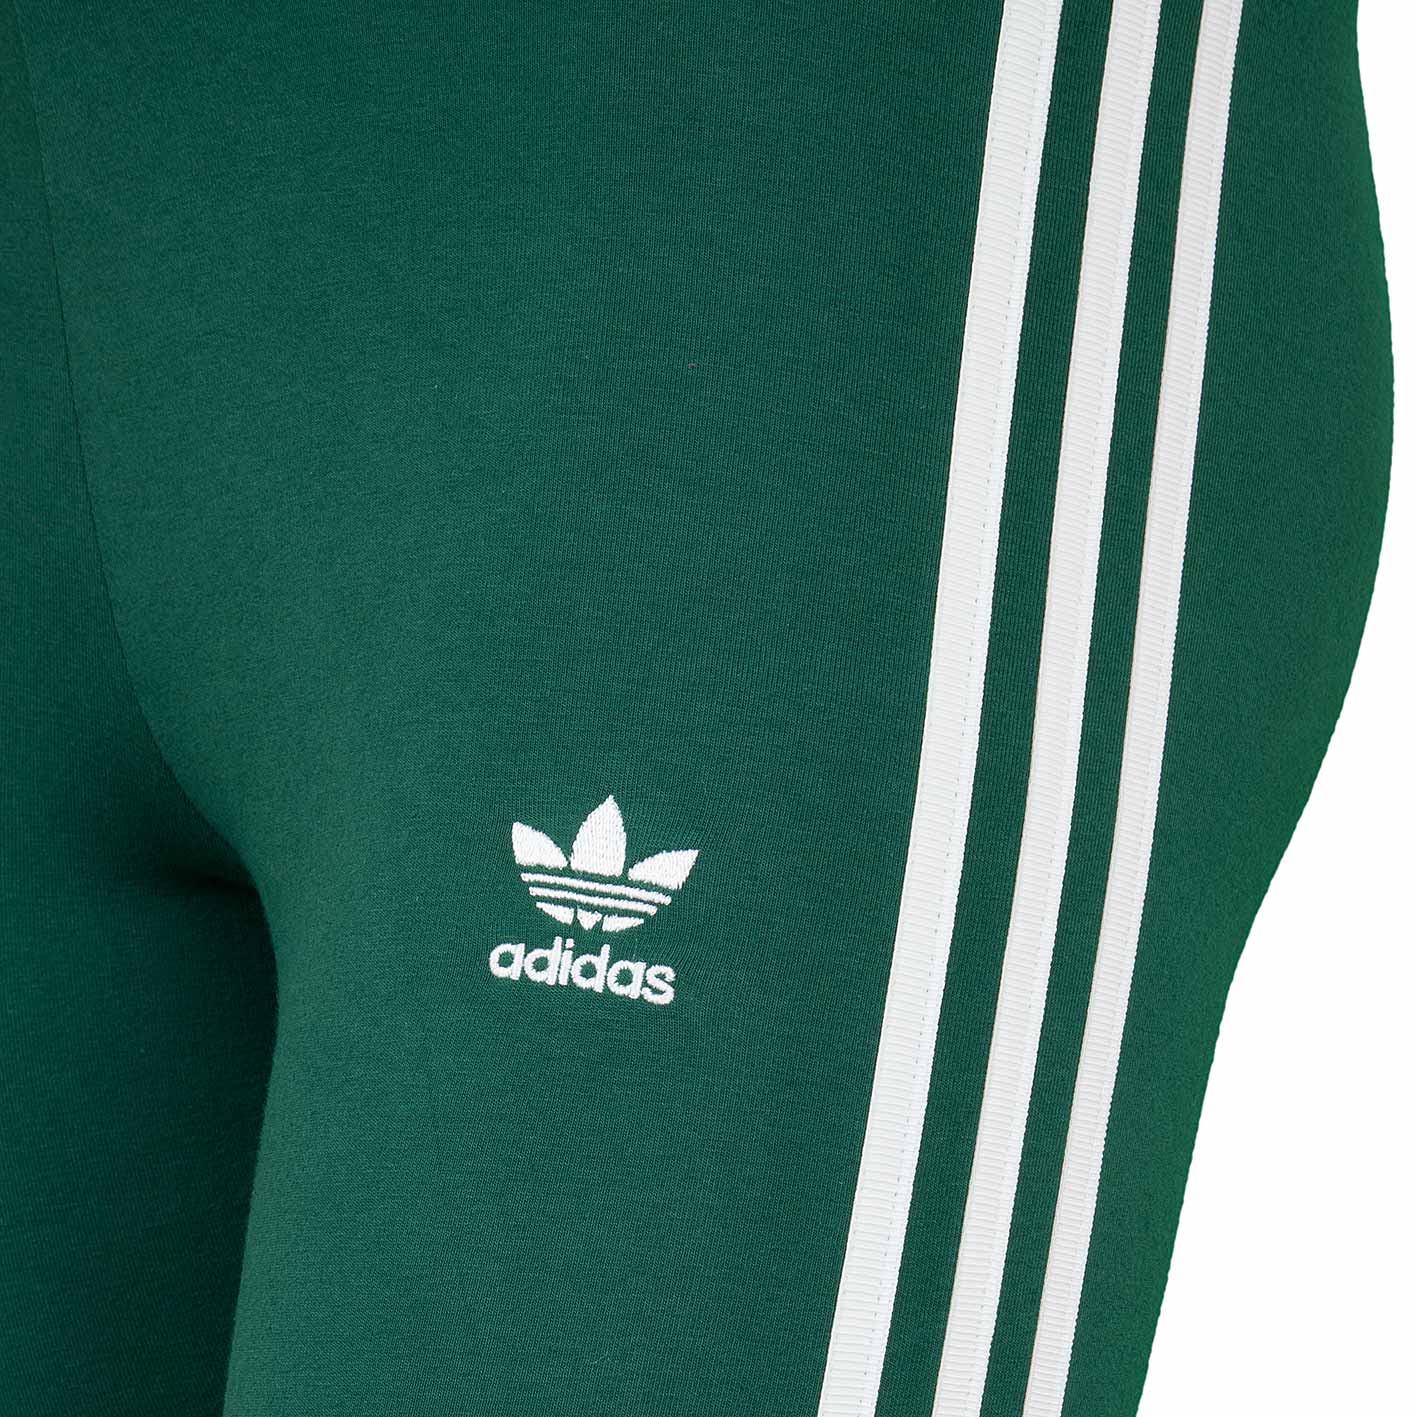 ☆ Adidas Originals Tights 3 Stripes grün - hier bestellen!